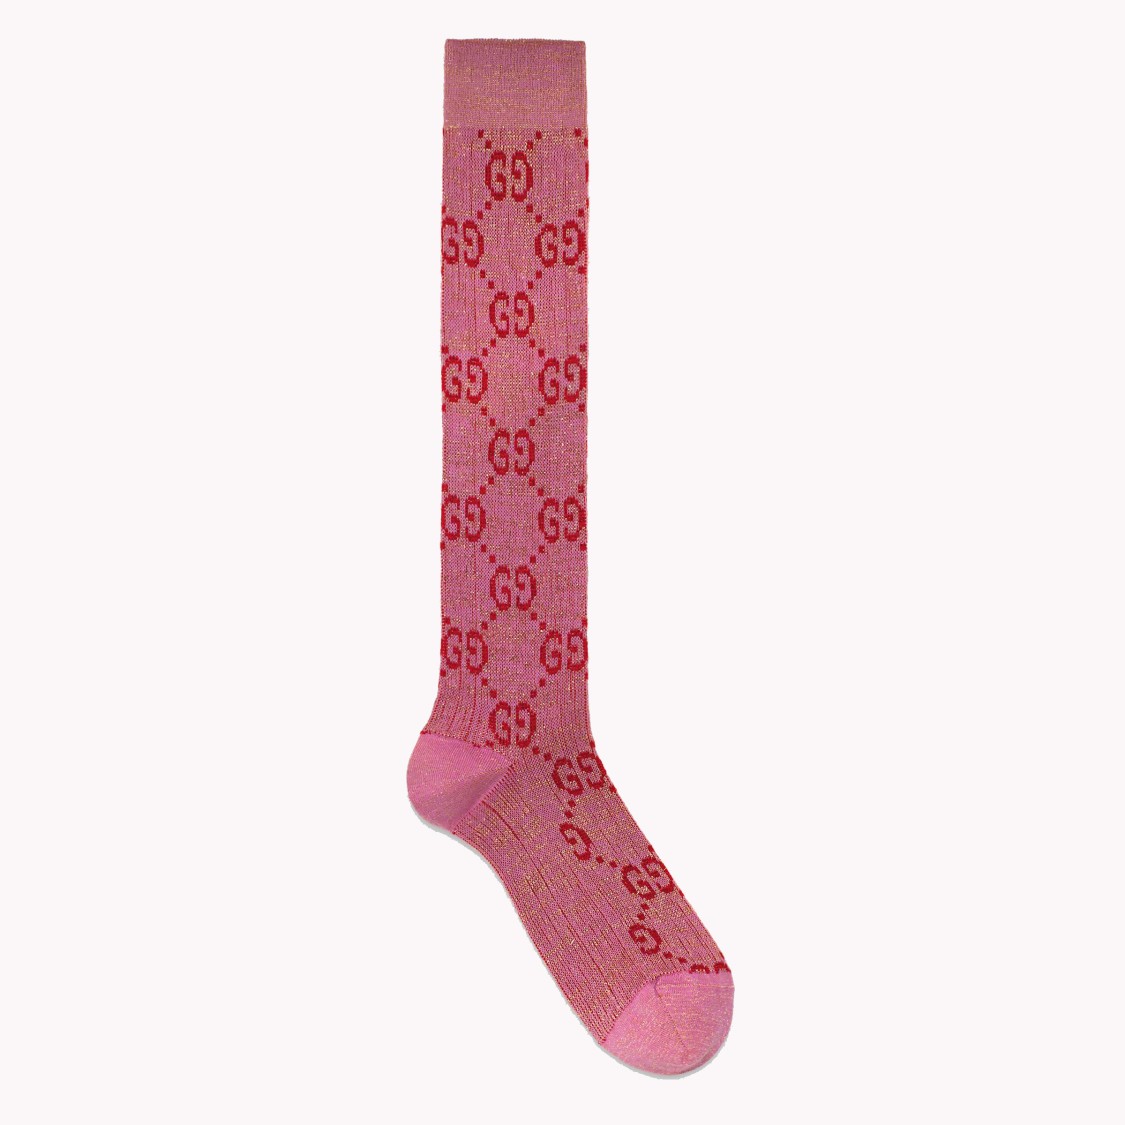 shop GUCCI  calzini: Gucci calzino in lurex rosa con motivo GG.
Composizione: 60% cotone, 25% poliammide e 15% fibra metallizzata.
Made in Italy.. 476525 3G199-5872 number 478782